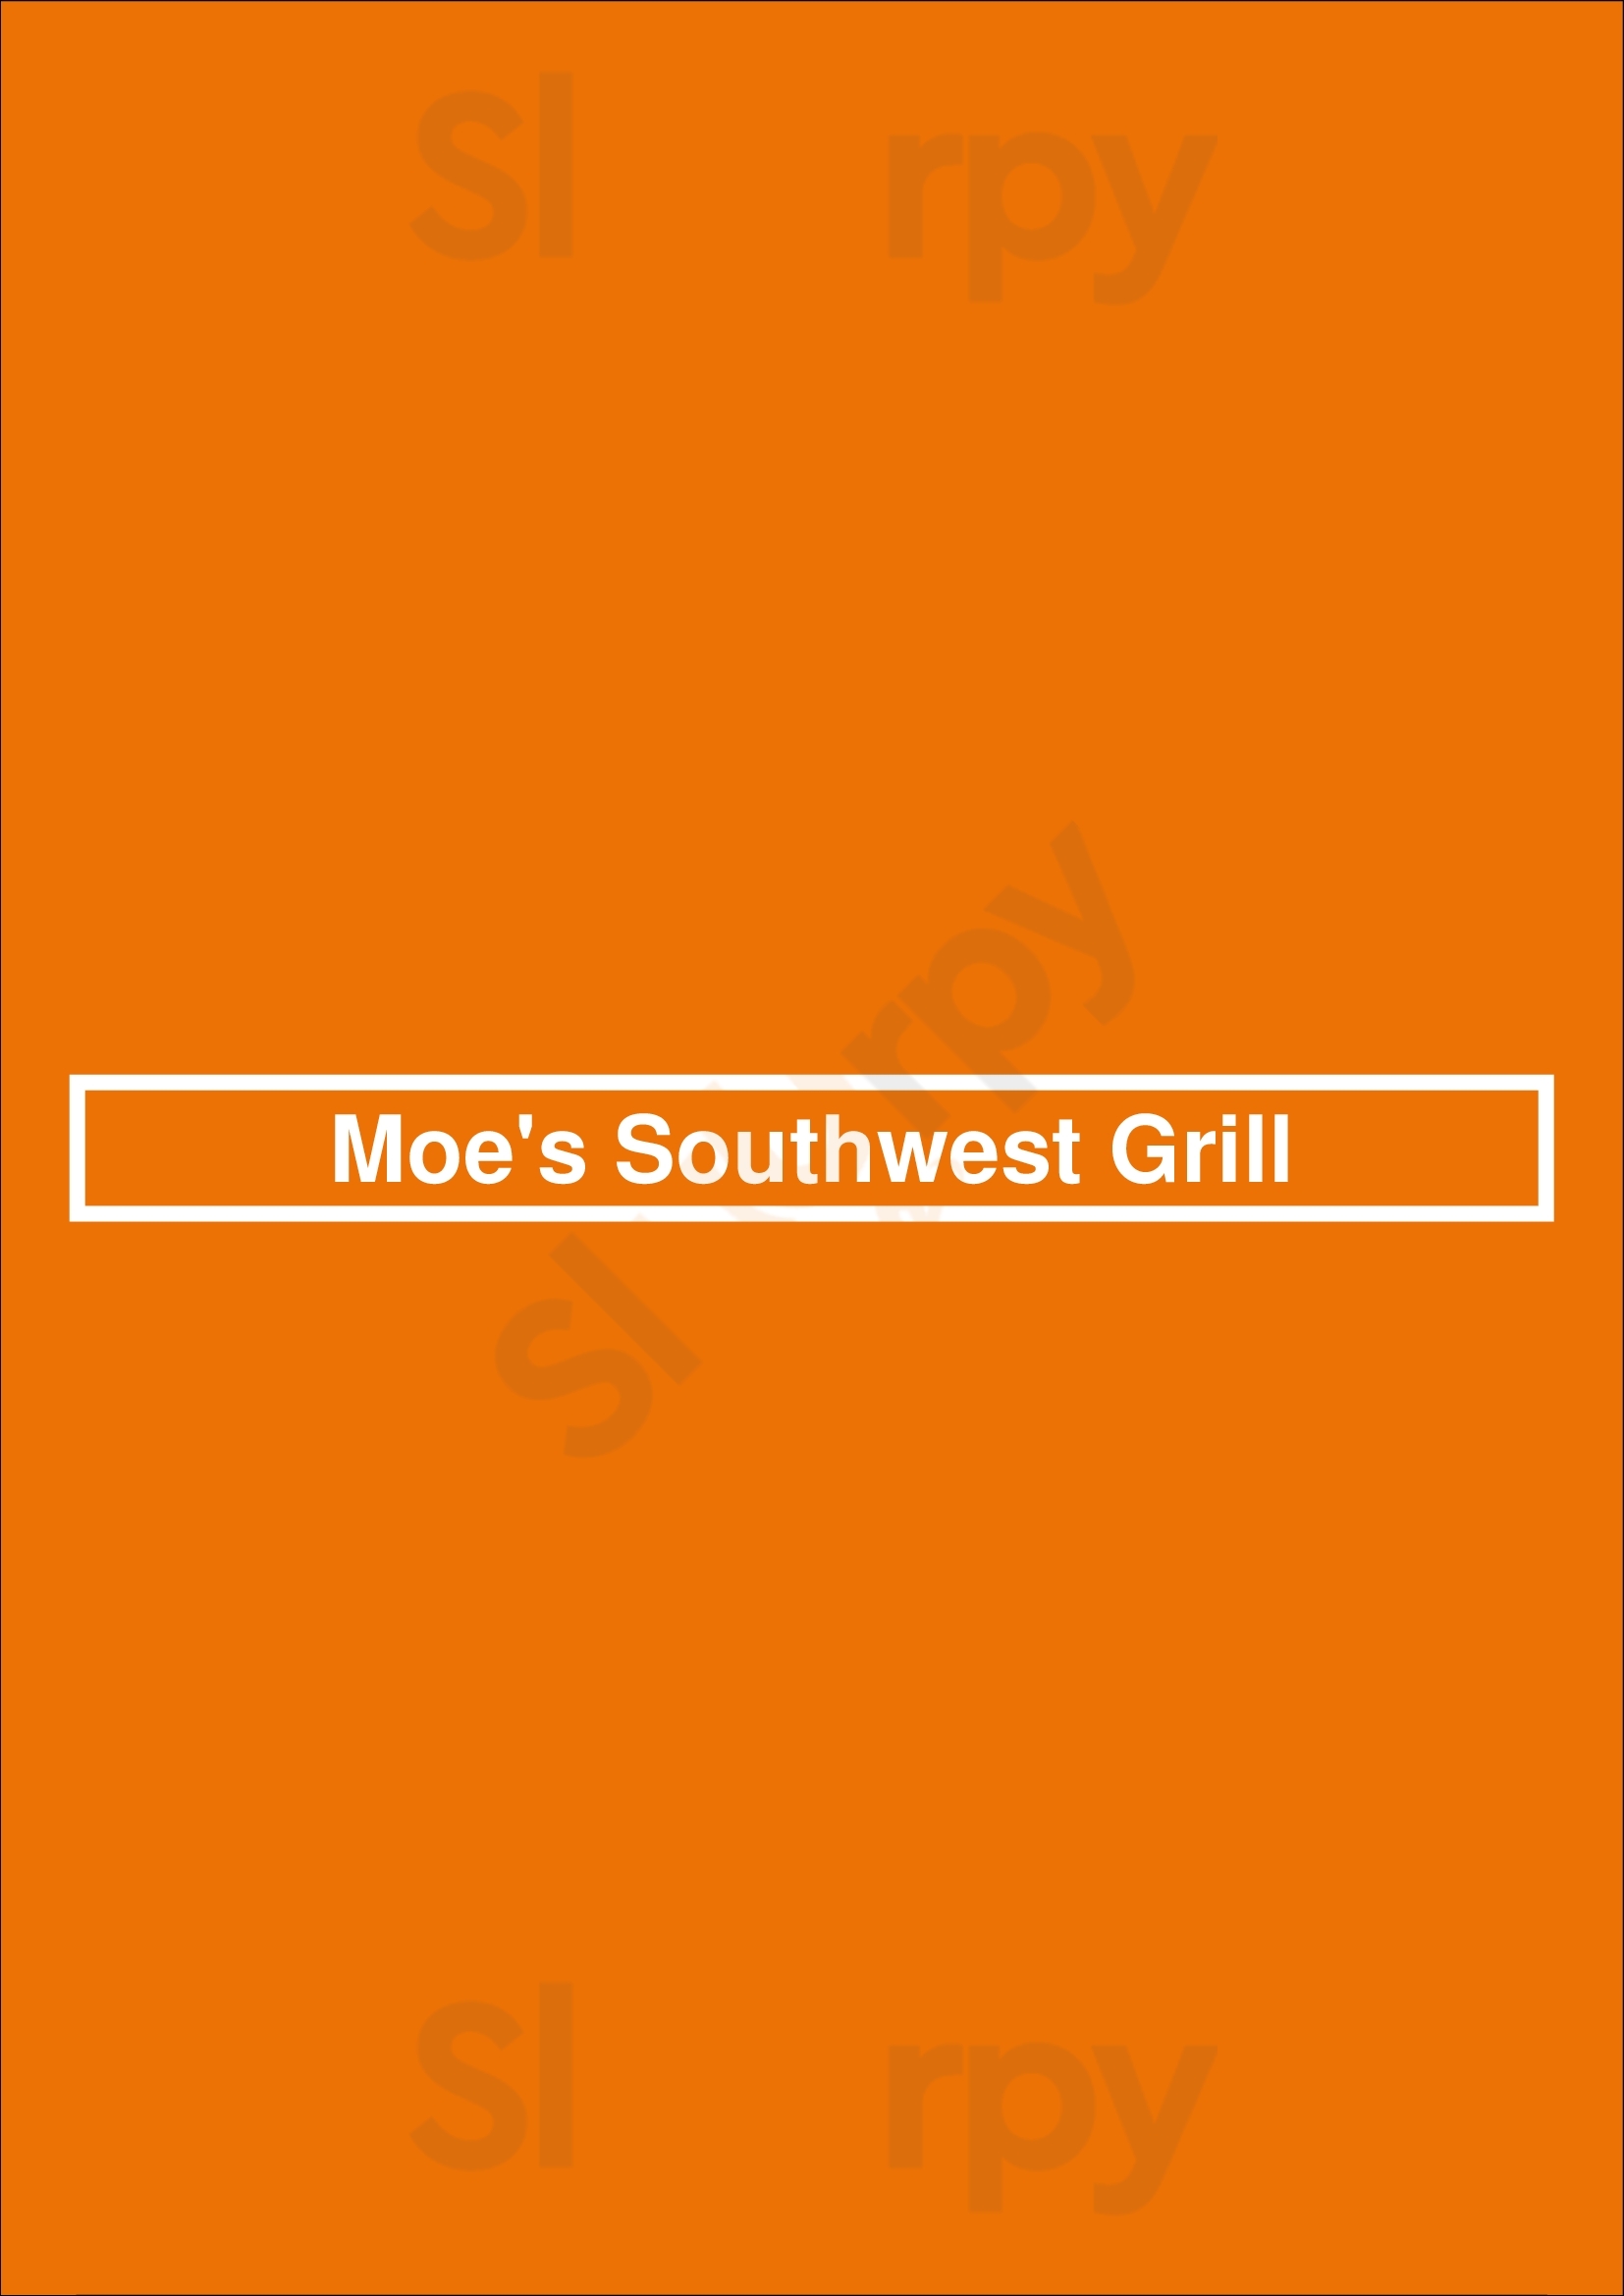 Moe's Southwest Grill Mount Juliet Menu - 1